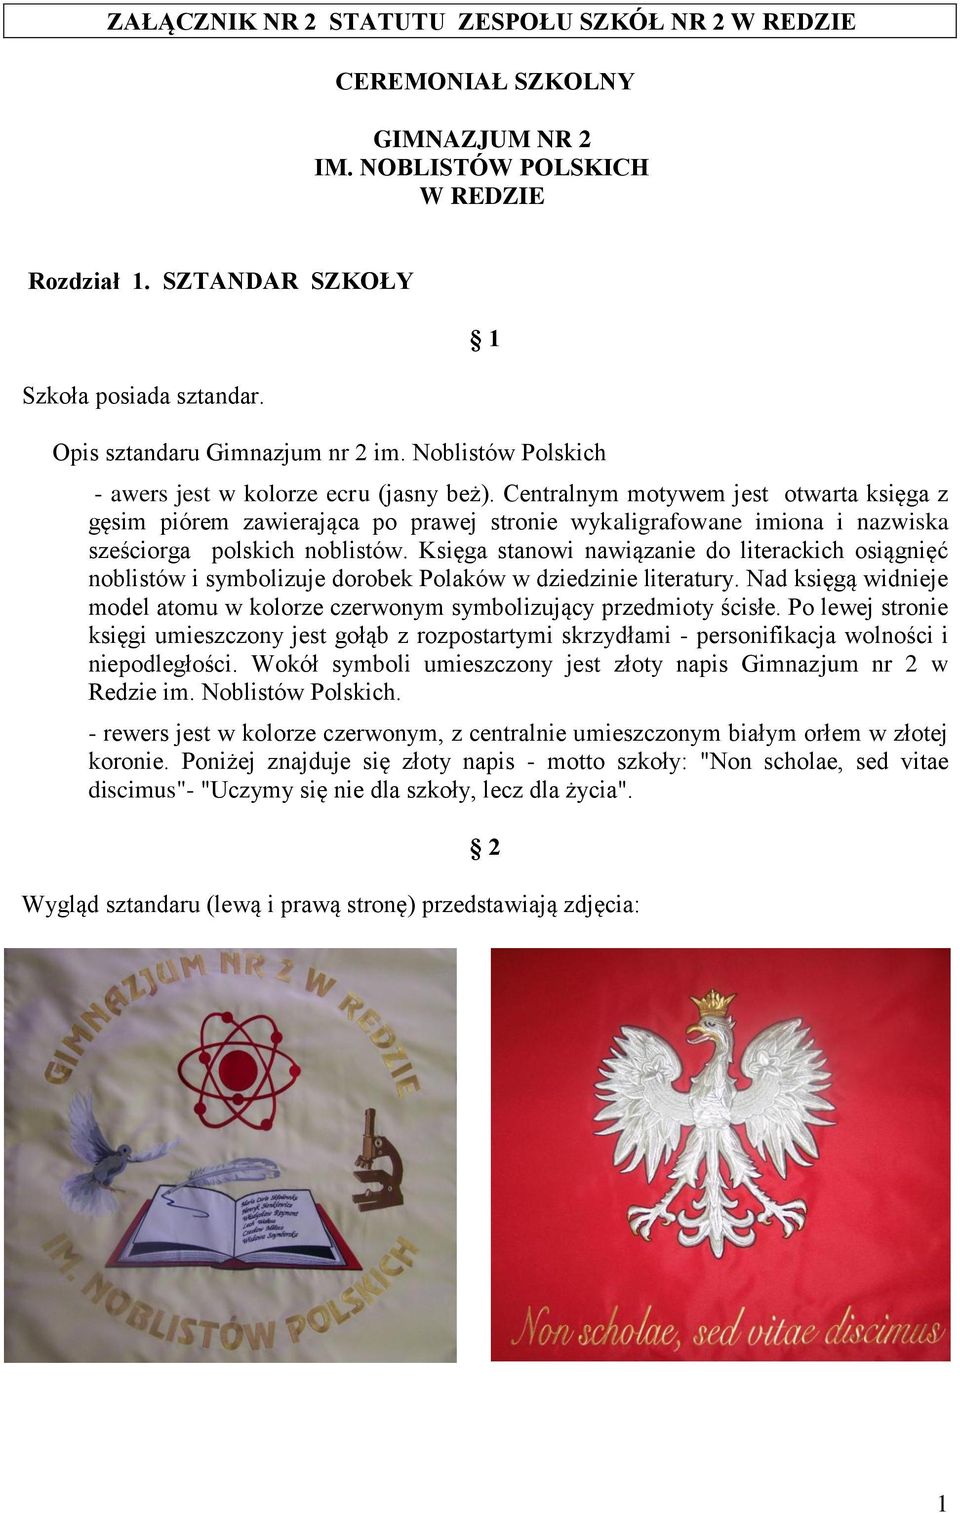 Centralnym motywem jest otwarta księga z gęsim piórem zawierająca po prawej stronie wykaligrafowane imiona i nazwiska sześciorga polskich noblistów.